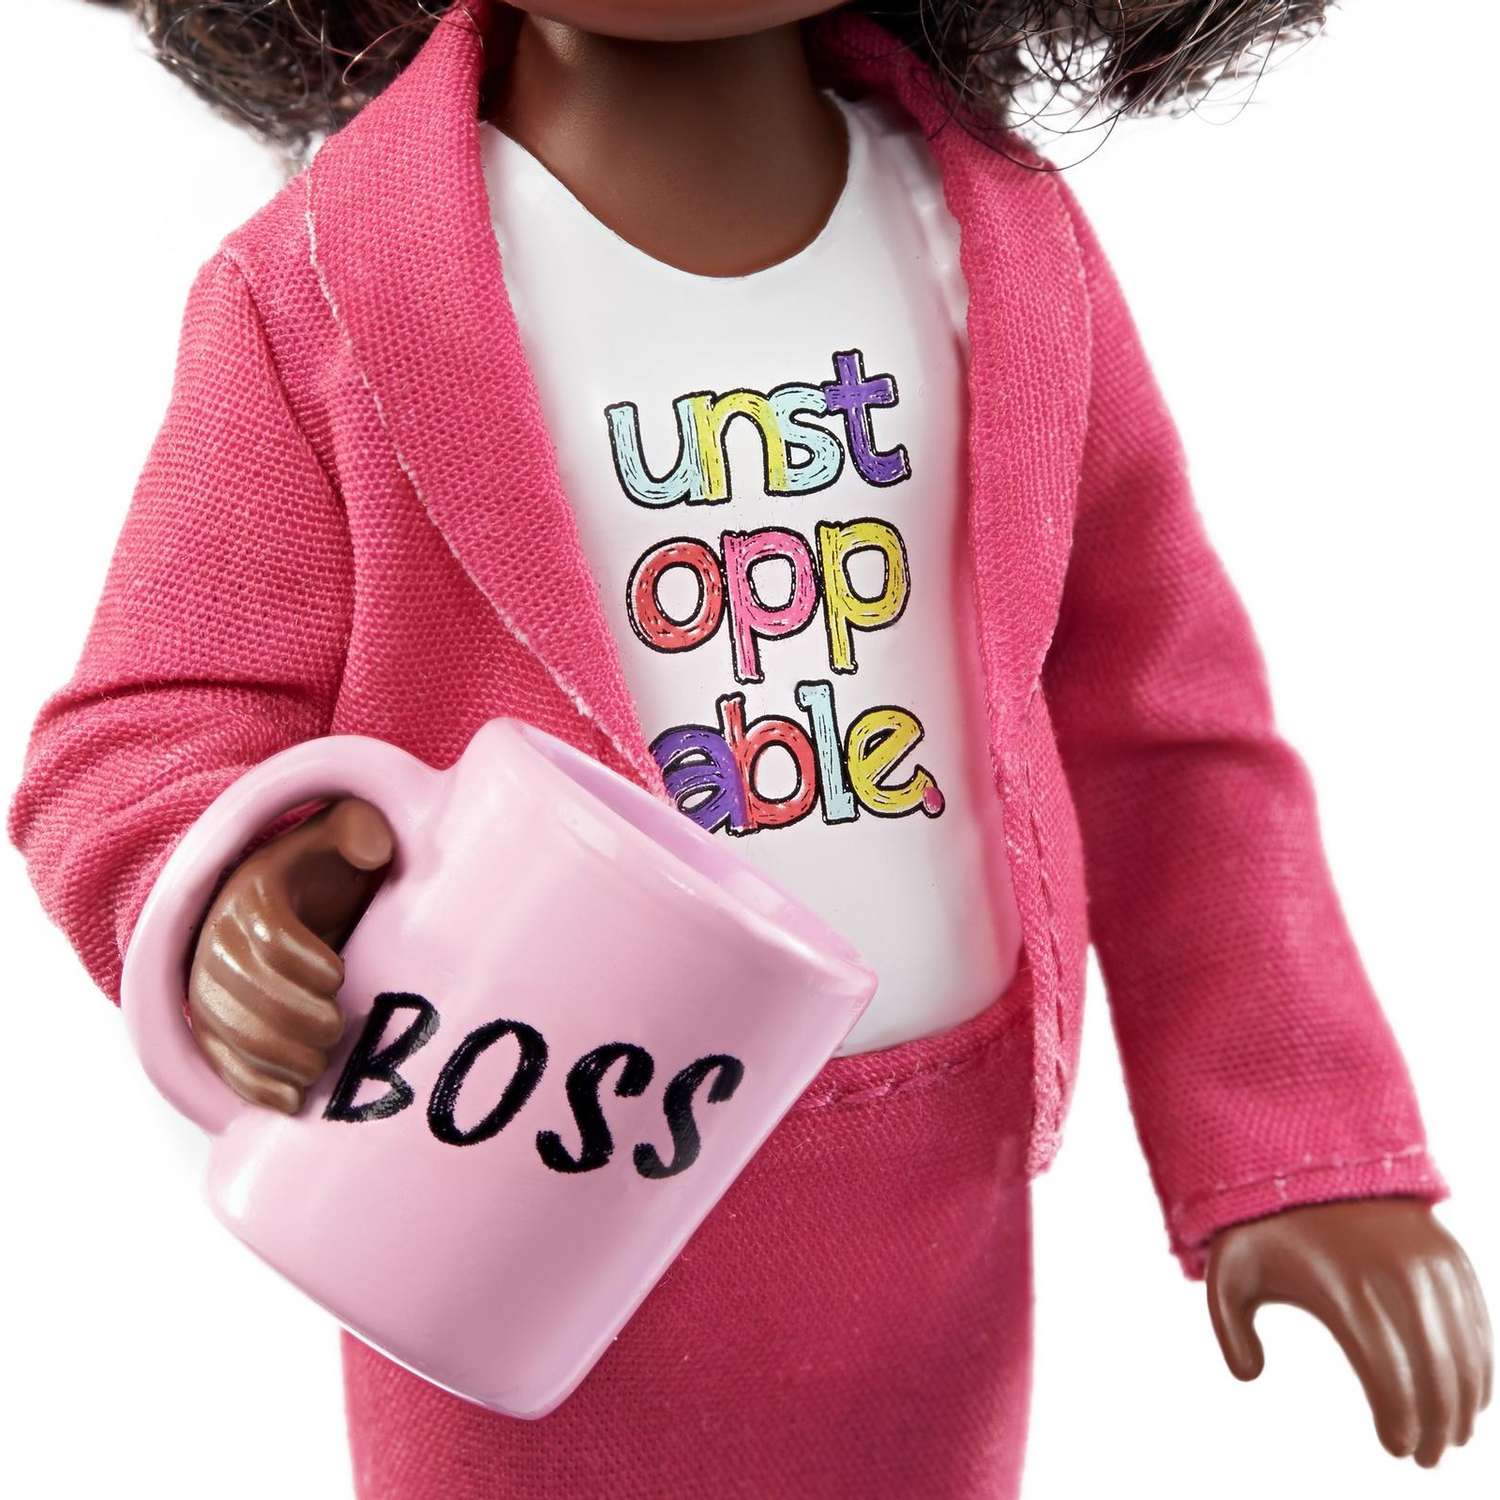 Набор Barbie Карьера Челси кукла+аксессуары в ассортименте GTN86 GTN86 - фото 27